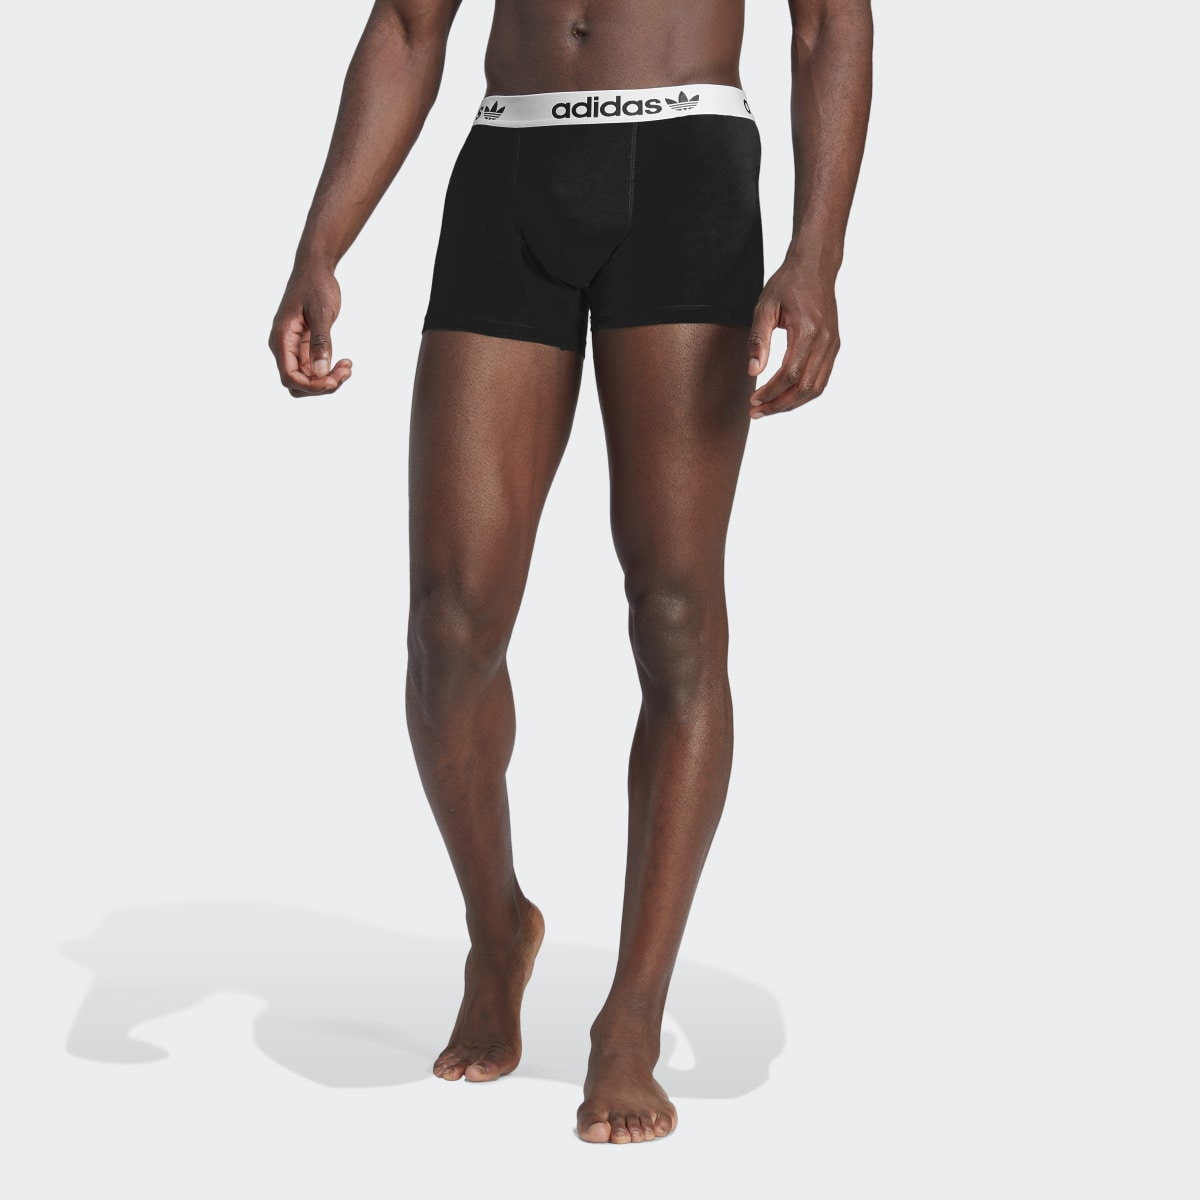 Adidas Boxer Comfort Flex Cotton Underwear (Confezione da 2). 4